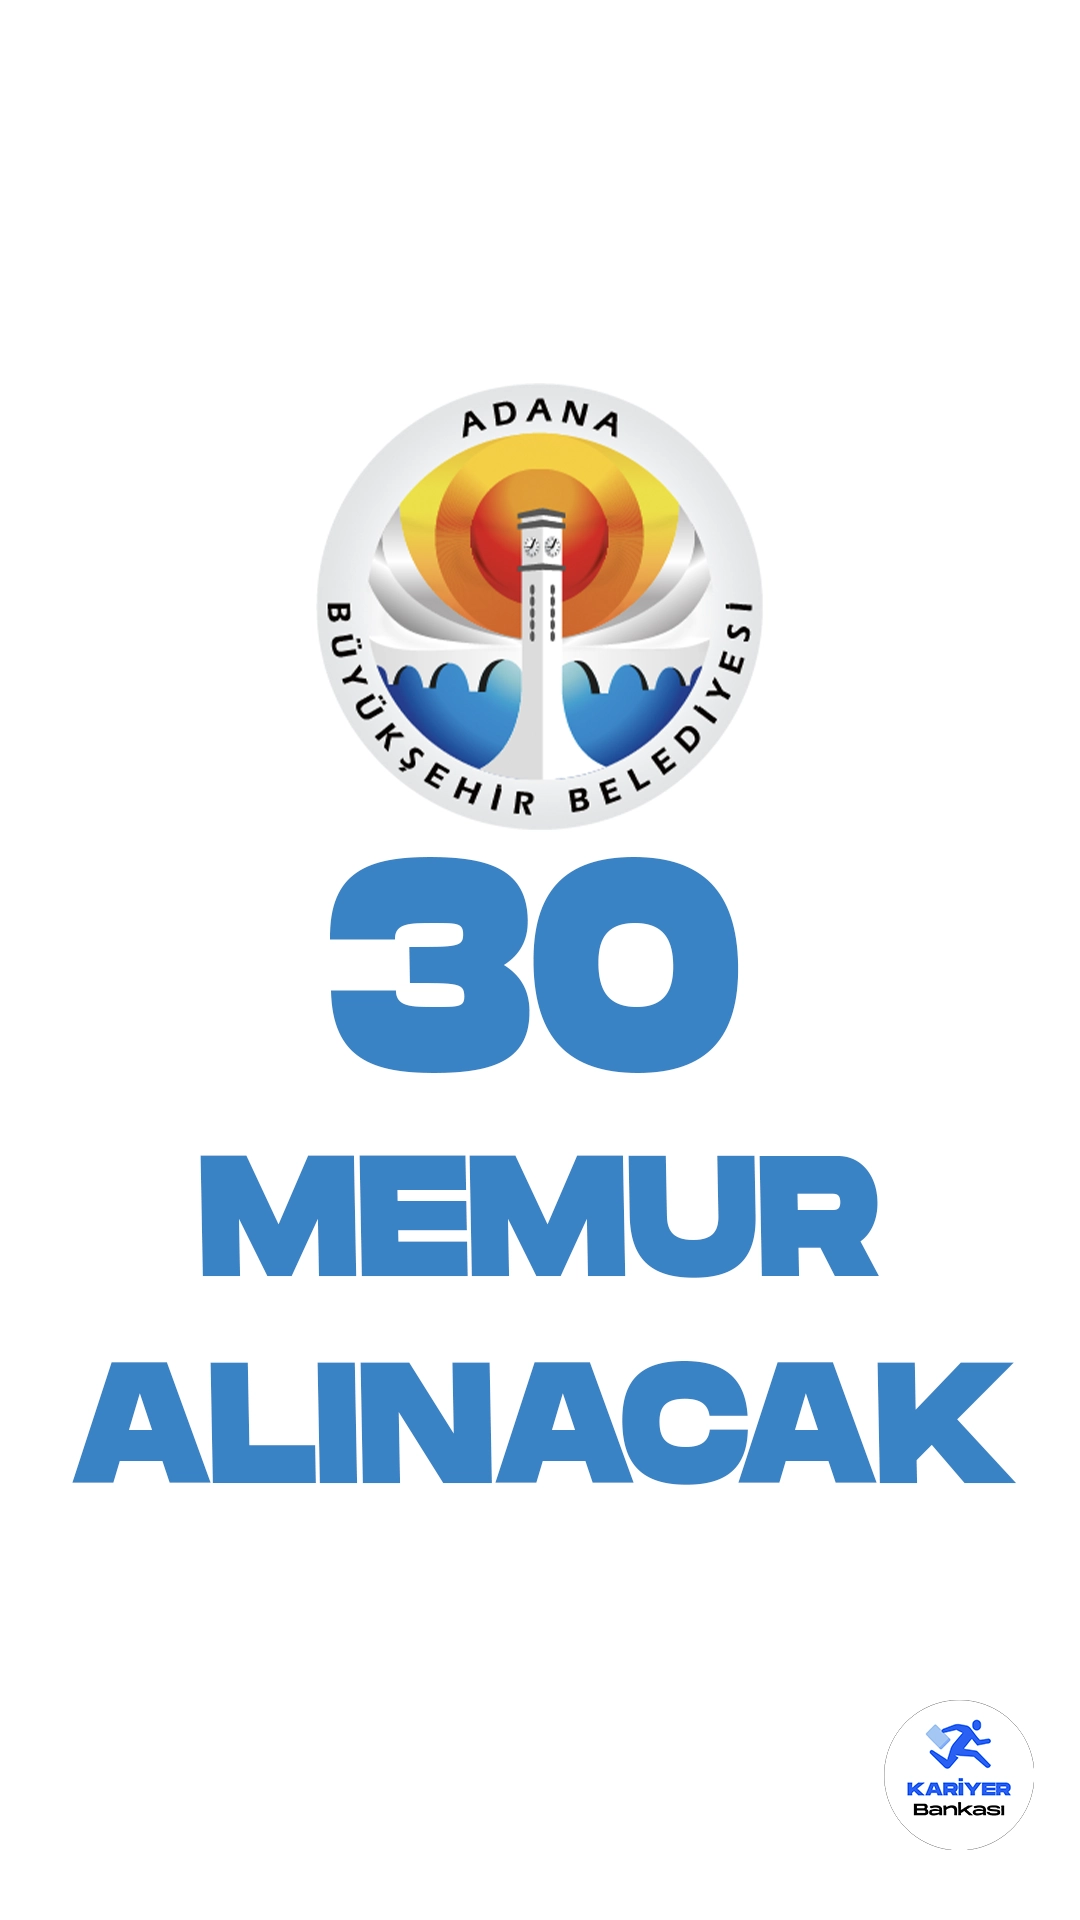 Adana Büyükşehir Belediyesi memur alımı yapacağını duyurdu. Cumhurbaşkanlığı Strateji ve Bütçe Başkanlığı Kamu ilan sitesinde yayımlanan duyuruya göre, Adana Büyükşehir Belediyesi kadın-erkek adaylar arasından 30 zabıta memuru alacak.